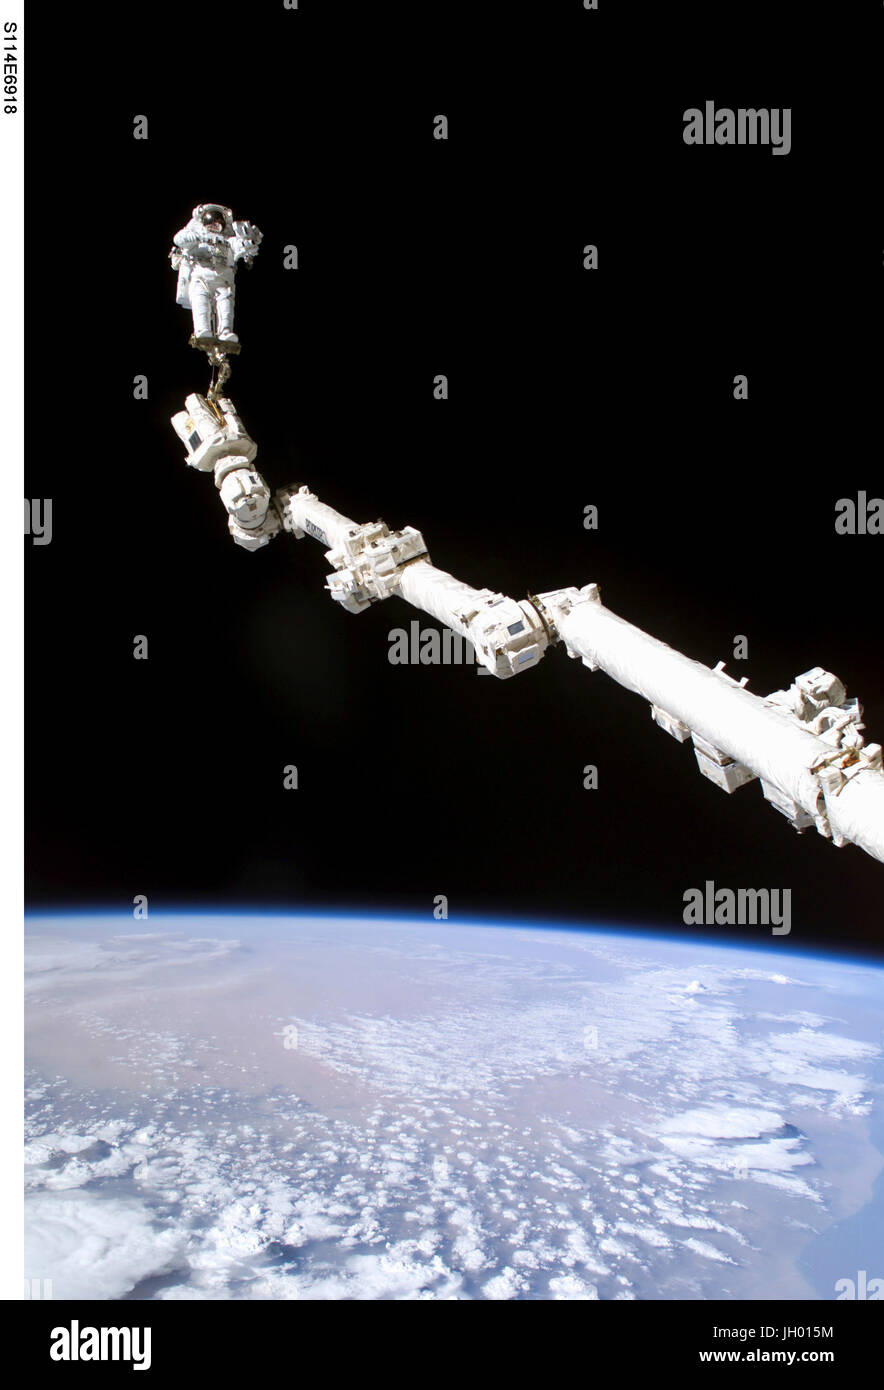 Astronaut Stephen K. Robinson, STS-114 Missionsspezialist verankert an einem Fuß Fessel auf der erweiterten internationalen Raumstation Canadarm2, beteiligt sich an der Mission dritten Tagung des Extravehicular Activity (EVA). Die Schwärze des Raumes und der Erde Horizont bilden die Kulisse für das Bild. NASA-Foto Stockfoto